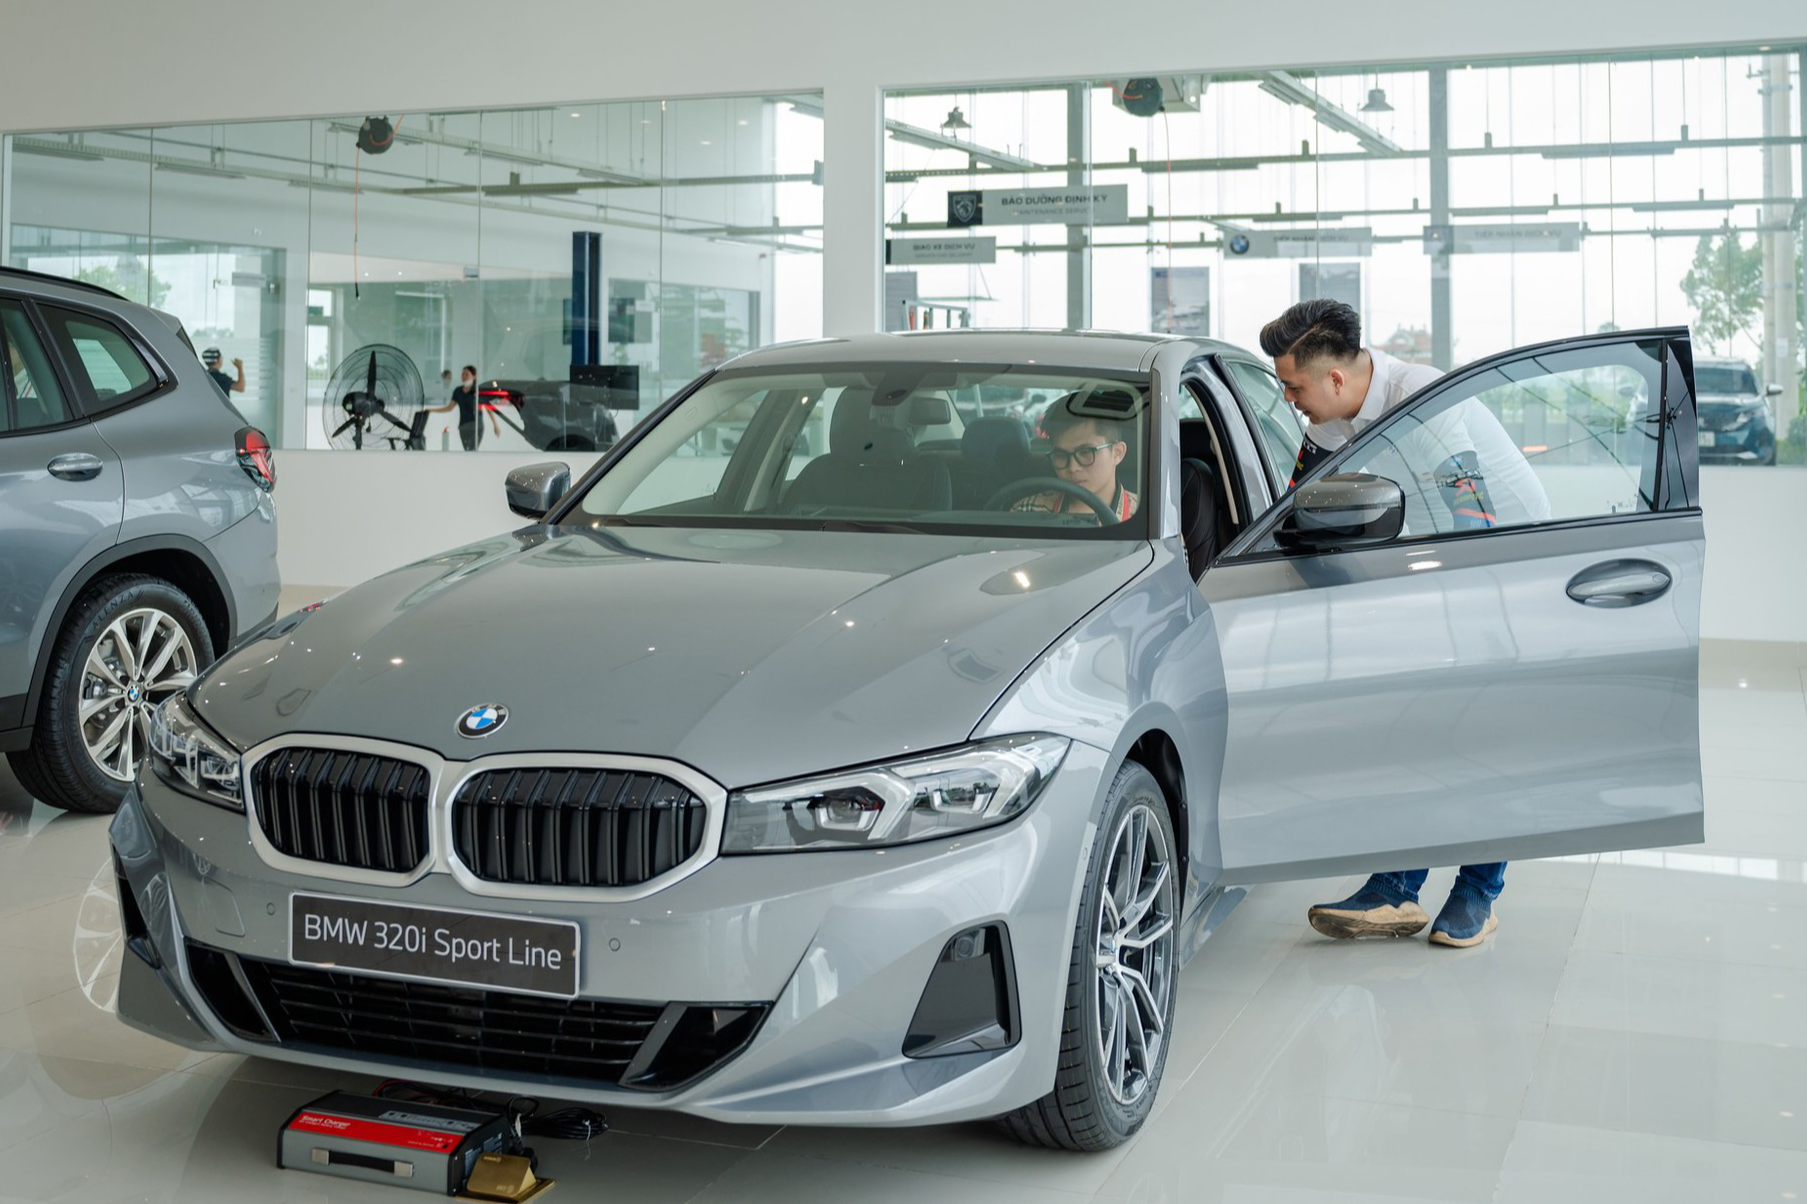 Giá bán đối thủ BMW 3-series giảm mạnh khi bản base thấp hơn cả Camry